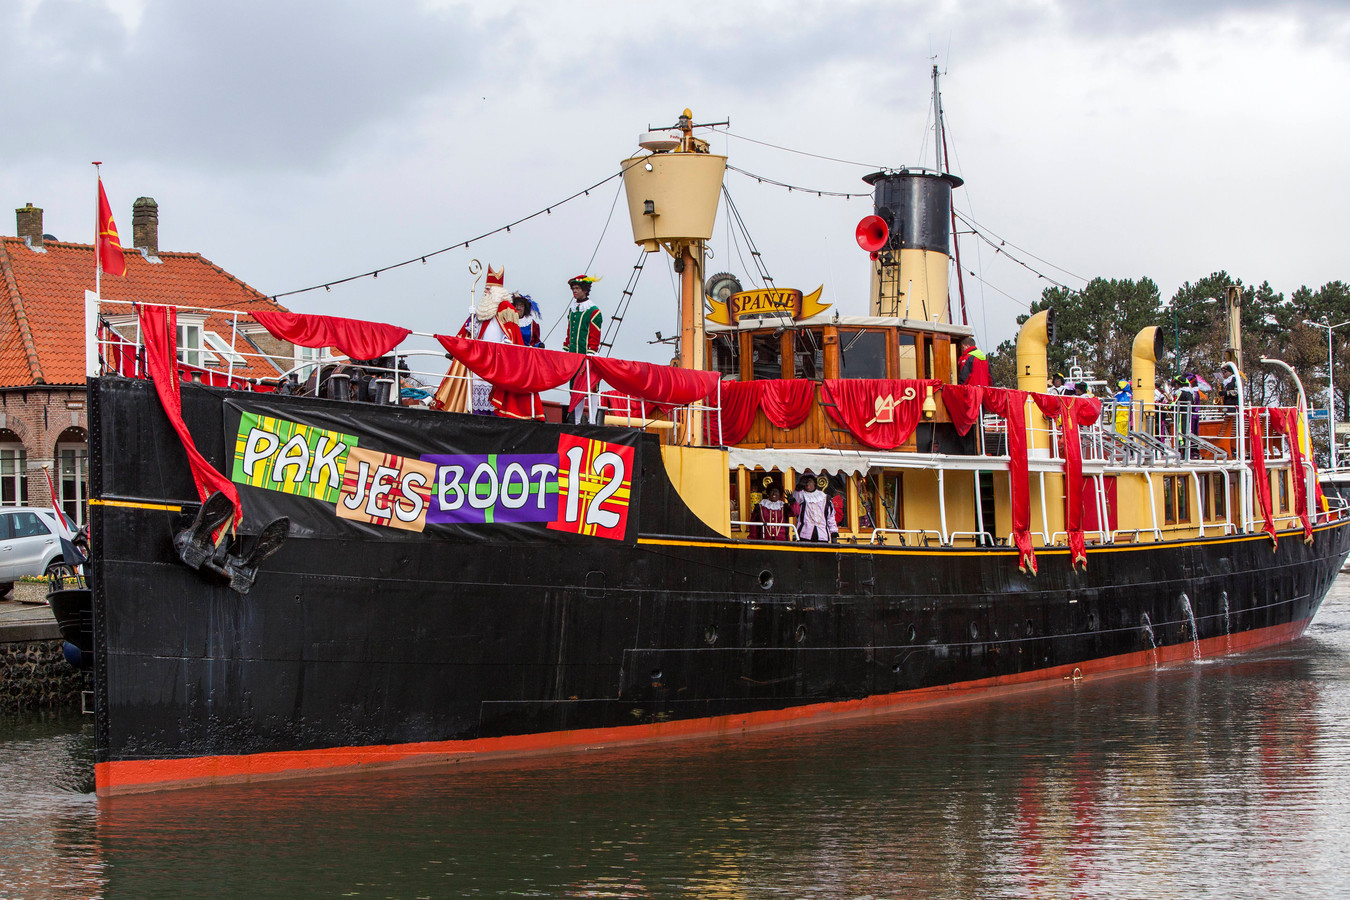 renderen recept Onverenigbaar Hij komt, hij komt: de échte 'Pakjesboot 12' van Sinterklaas, naar  Willemstad | Foto | bndestem.nl